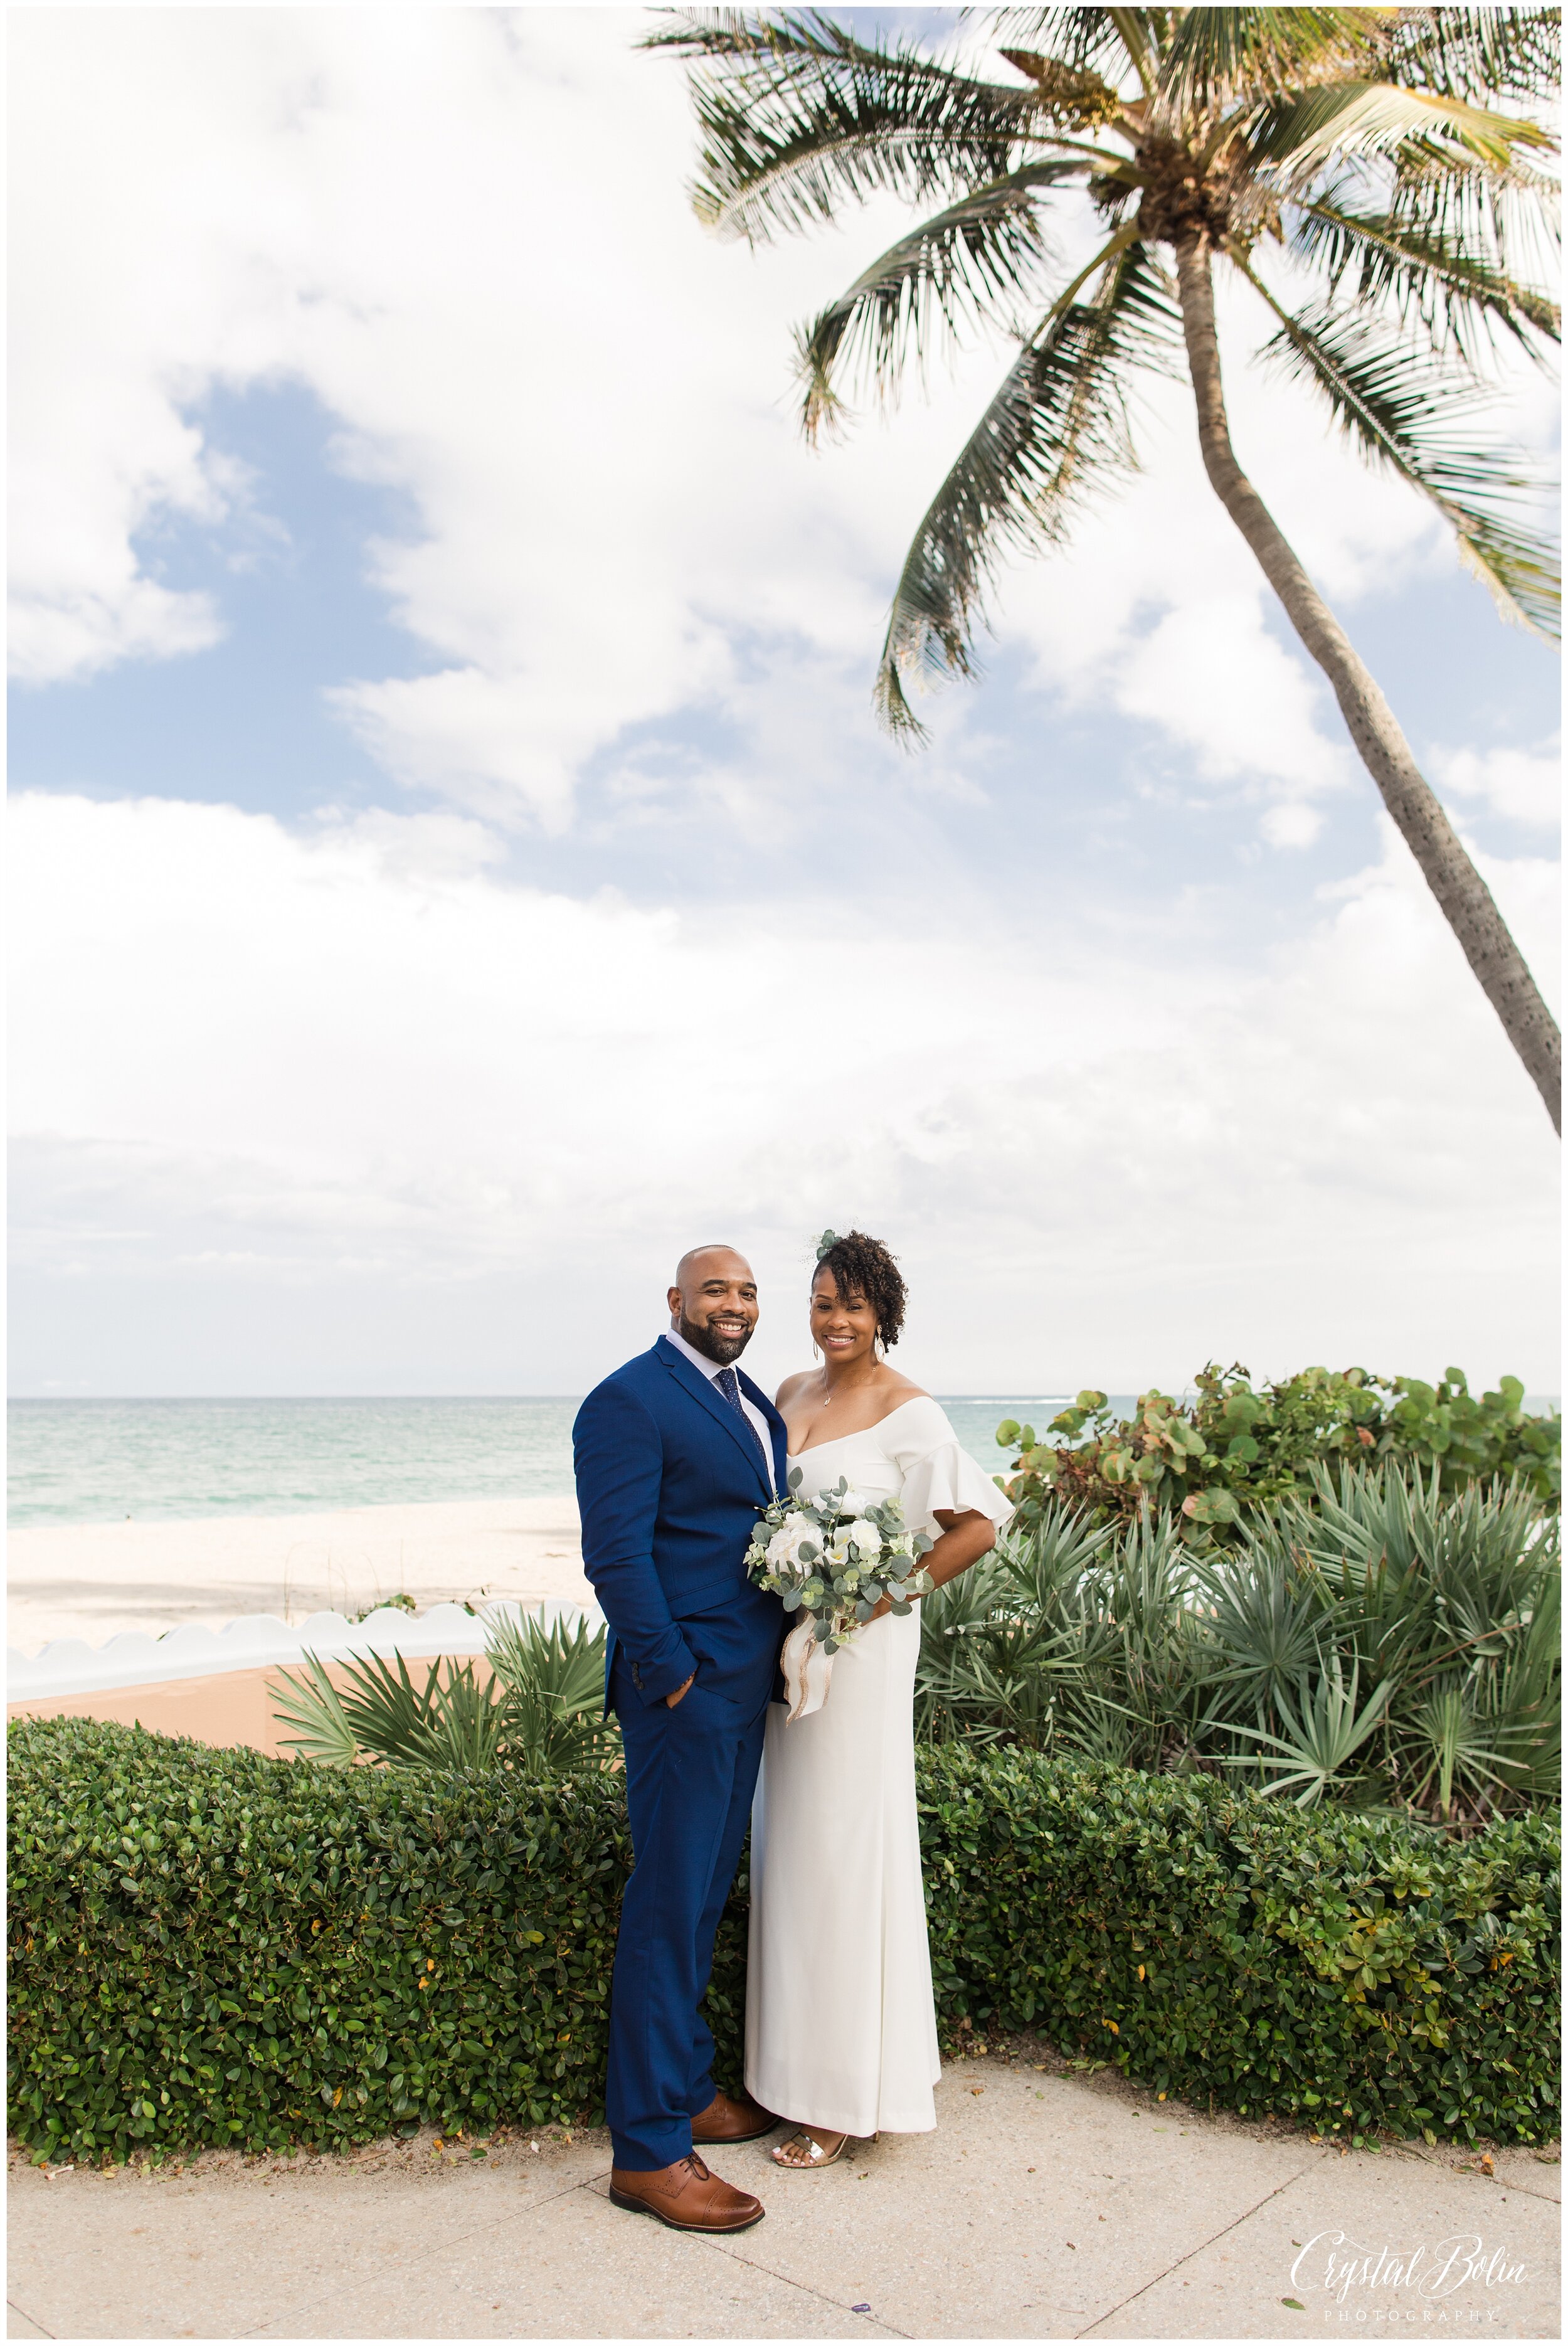 Worth Avenue Clock Tower Wedding in Palm Beach, Florida — Crystal